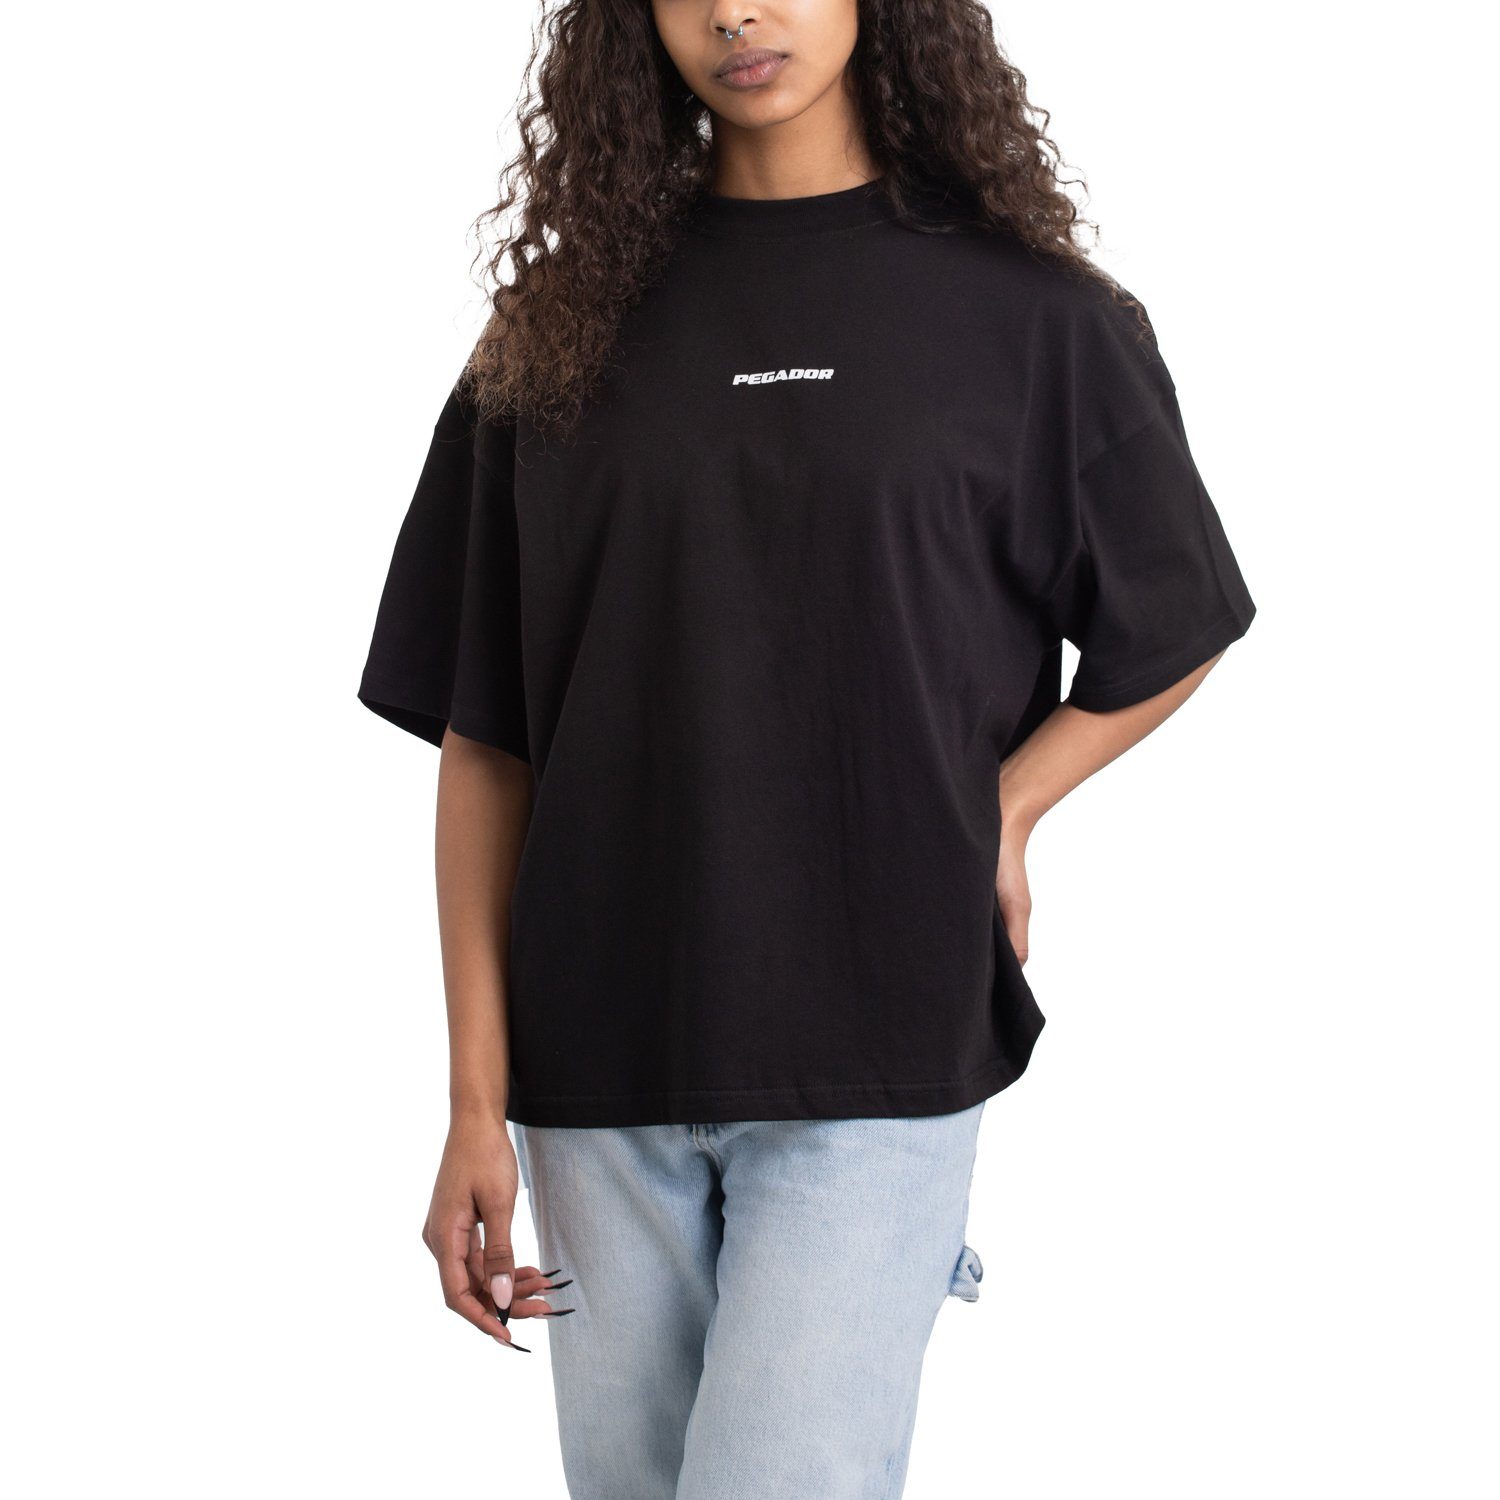 Pegador T-Shirt Logo Arendal Oversized Pegador Tee Heavy